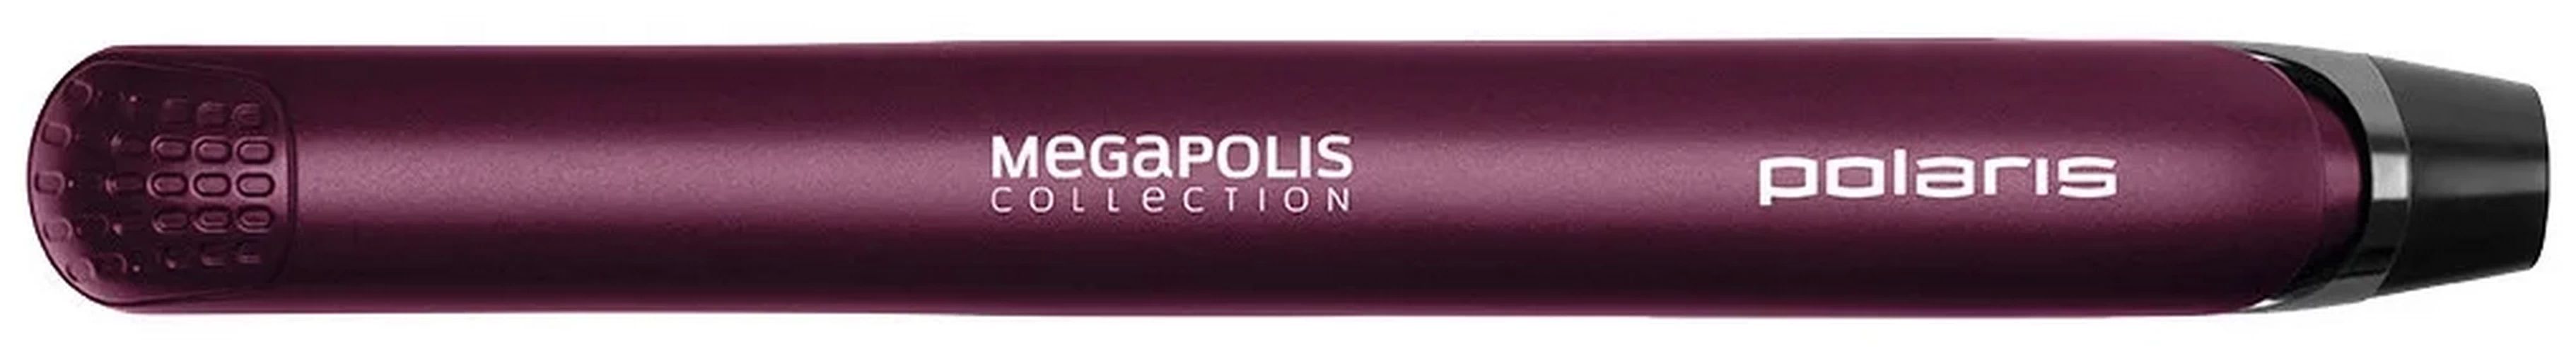 Выпрямитель волос Polaris PHS 2590KT фиолетовый выпрямитель волос polaris phs 2590kt megapolis violet